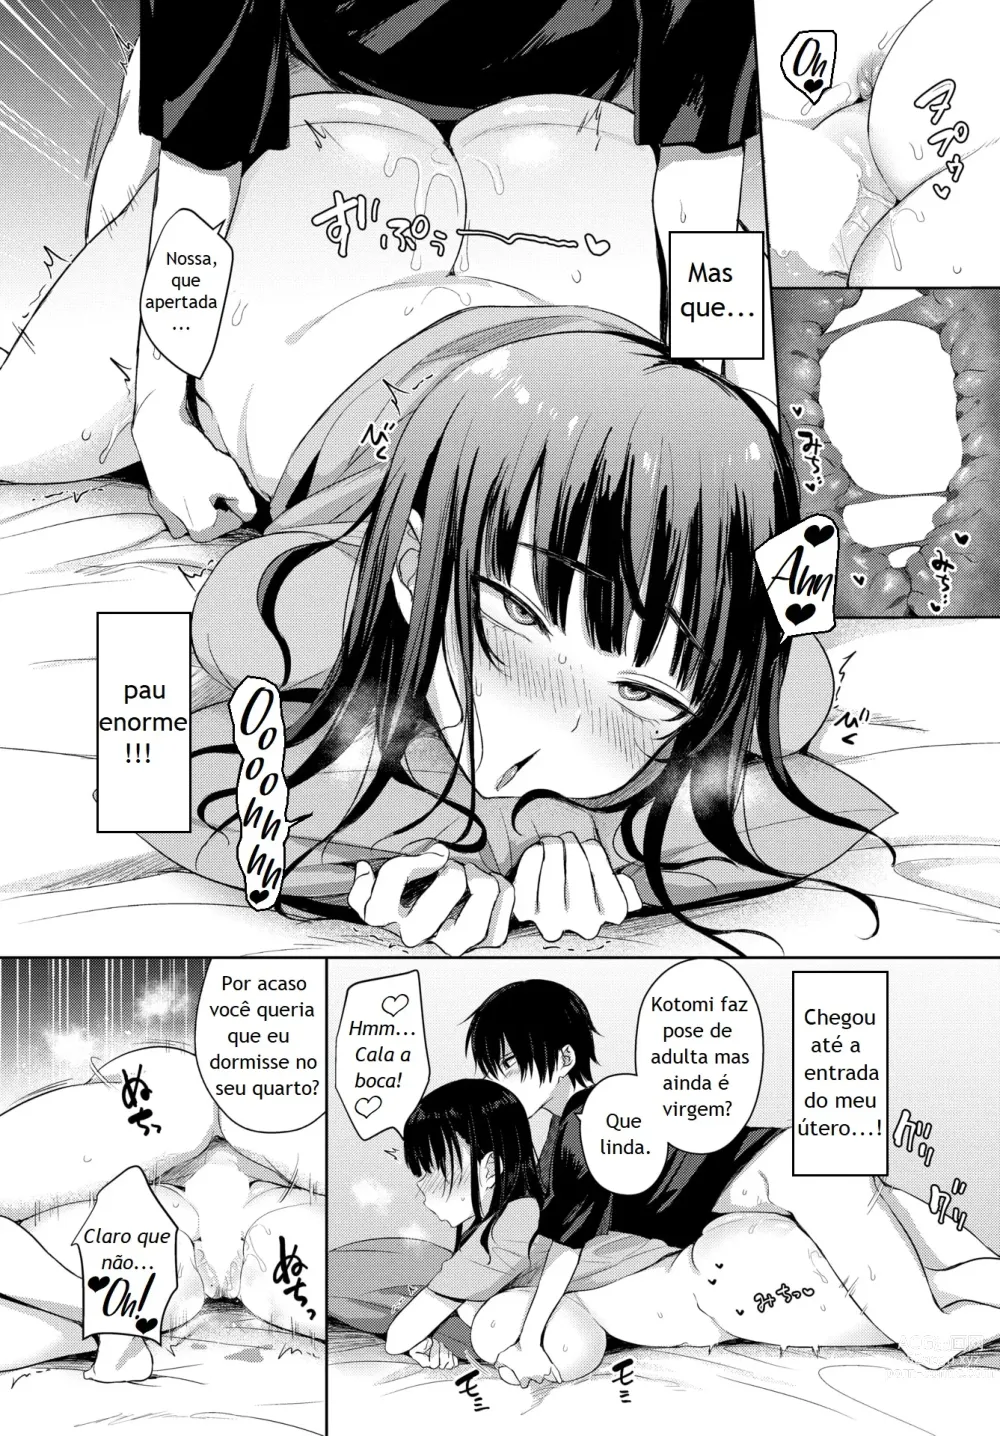 Page 8 of manga 7 Days